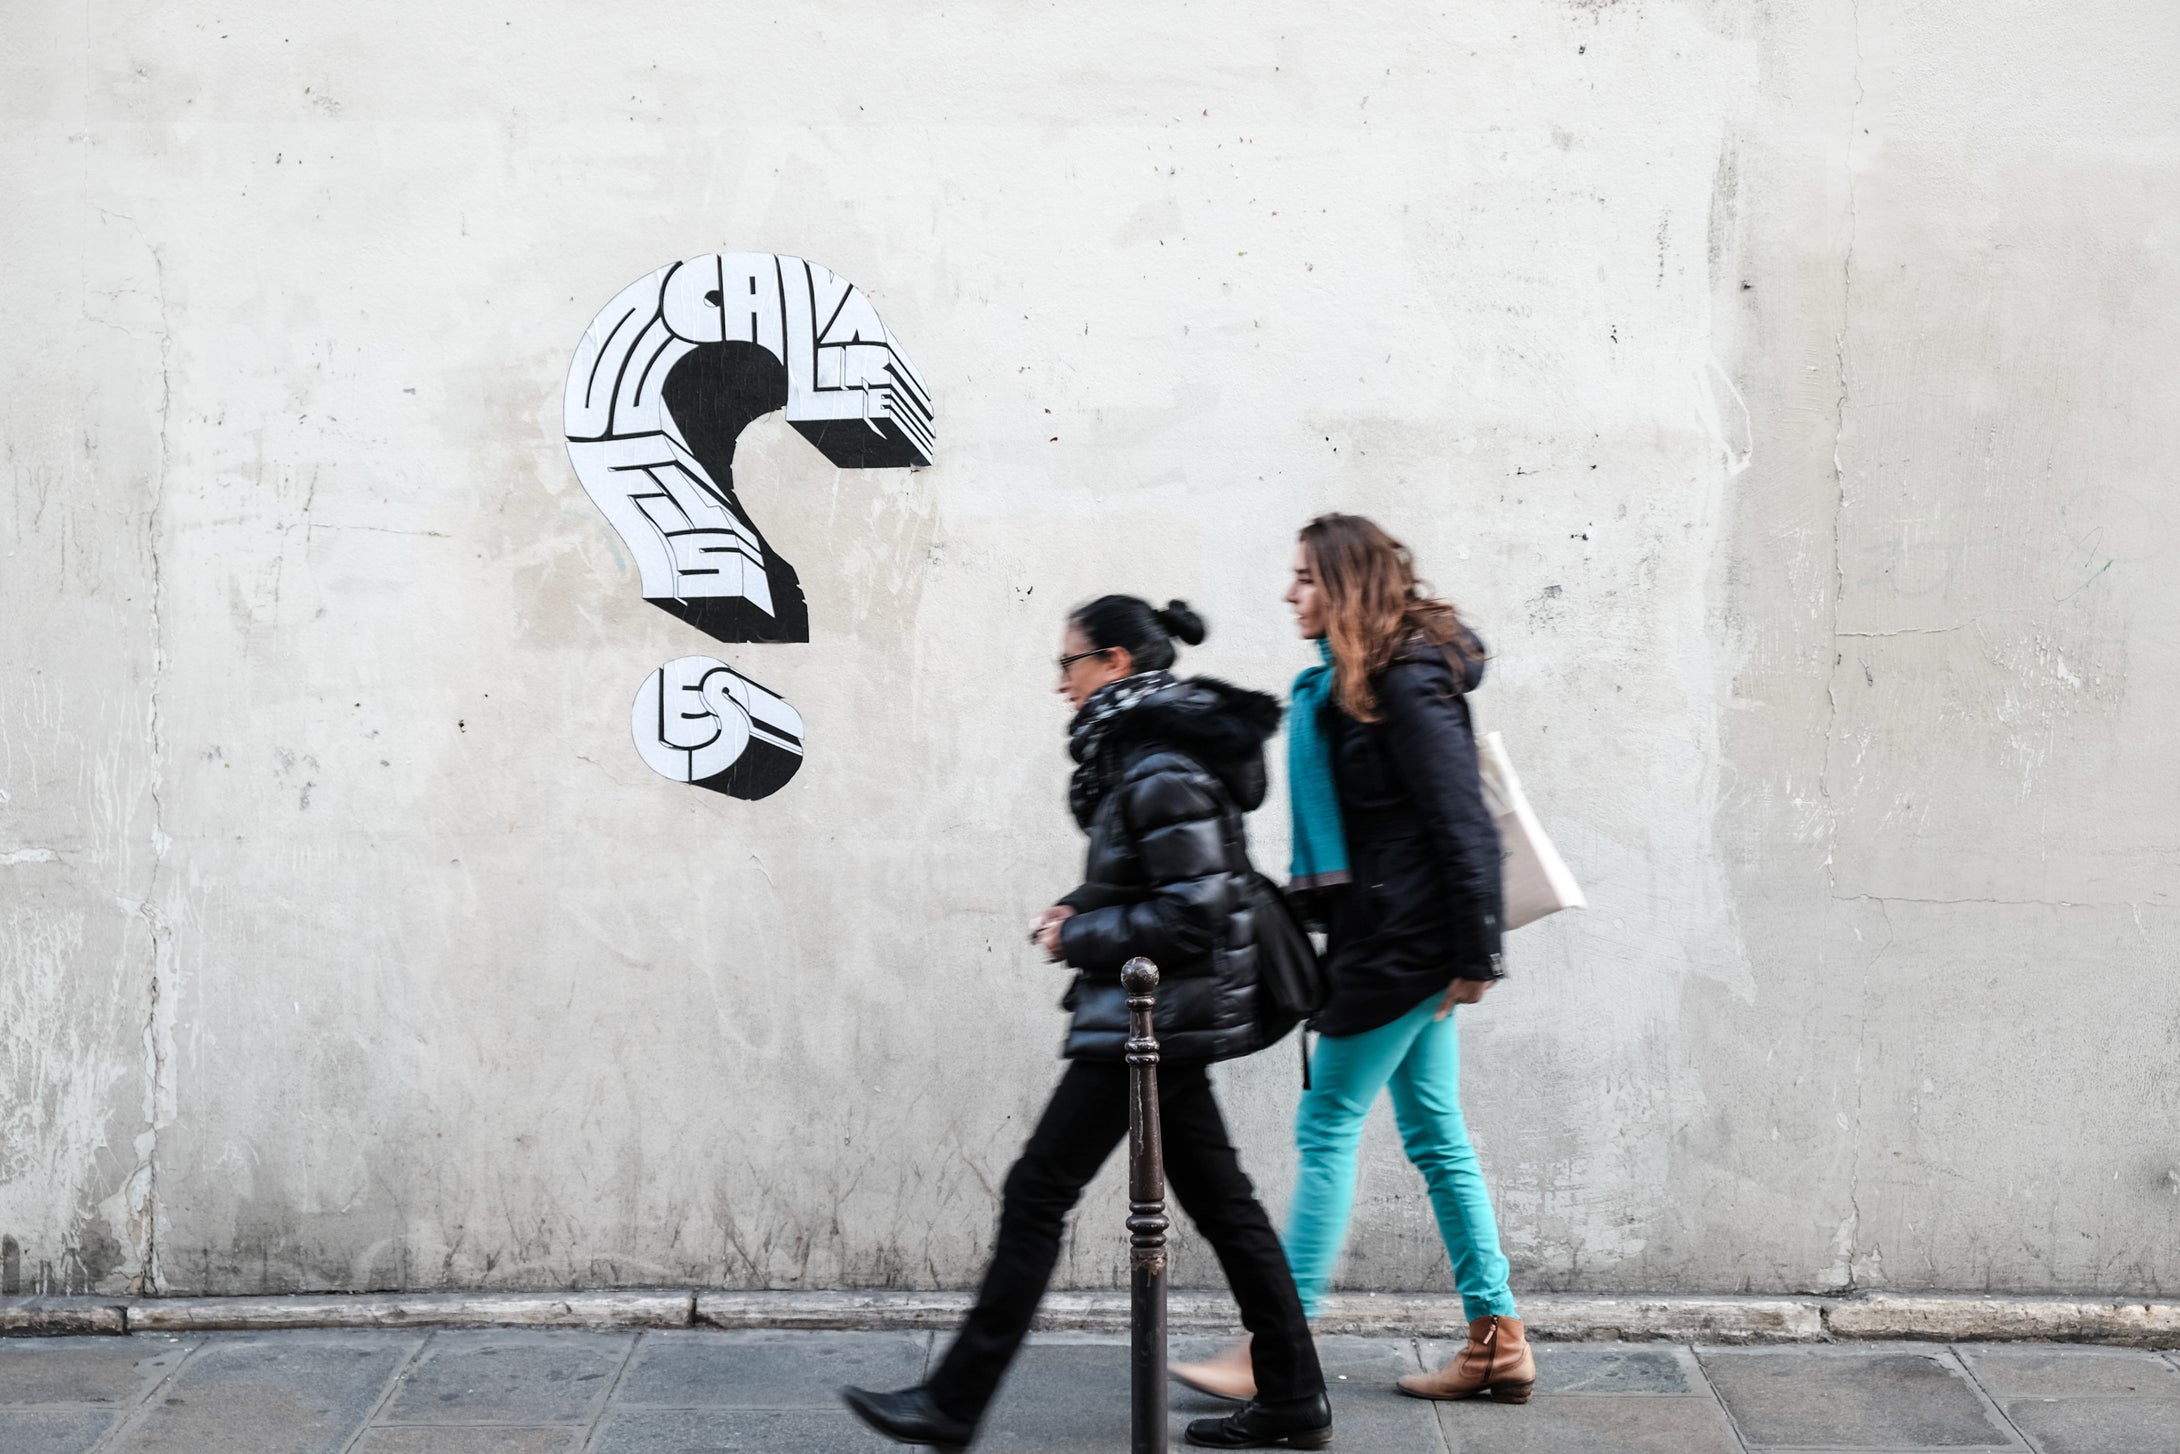 Streetfotografie Workshop in Düsseldorf, zwei Frauen vor einer Wand mit Stencil Kunst und ein Fragezeichen